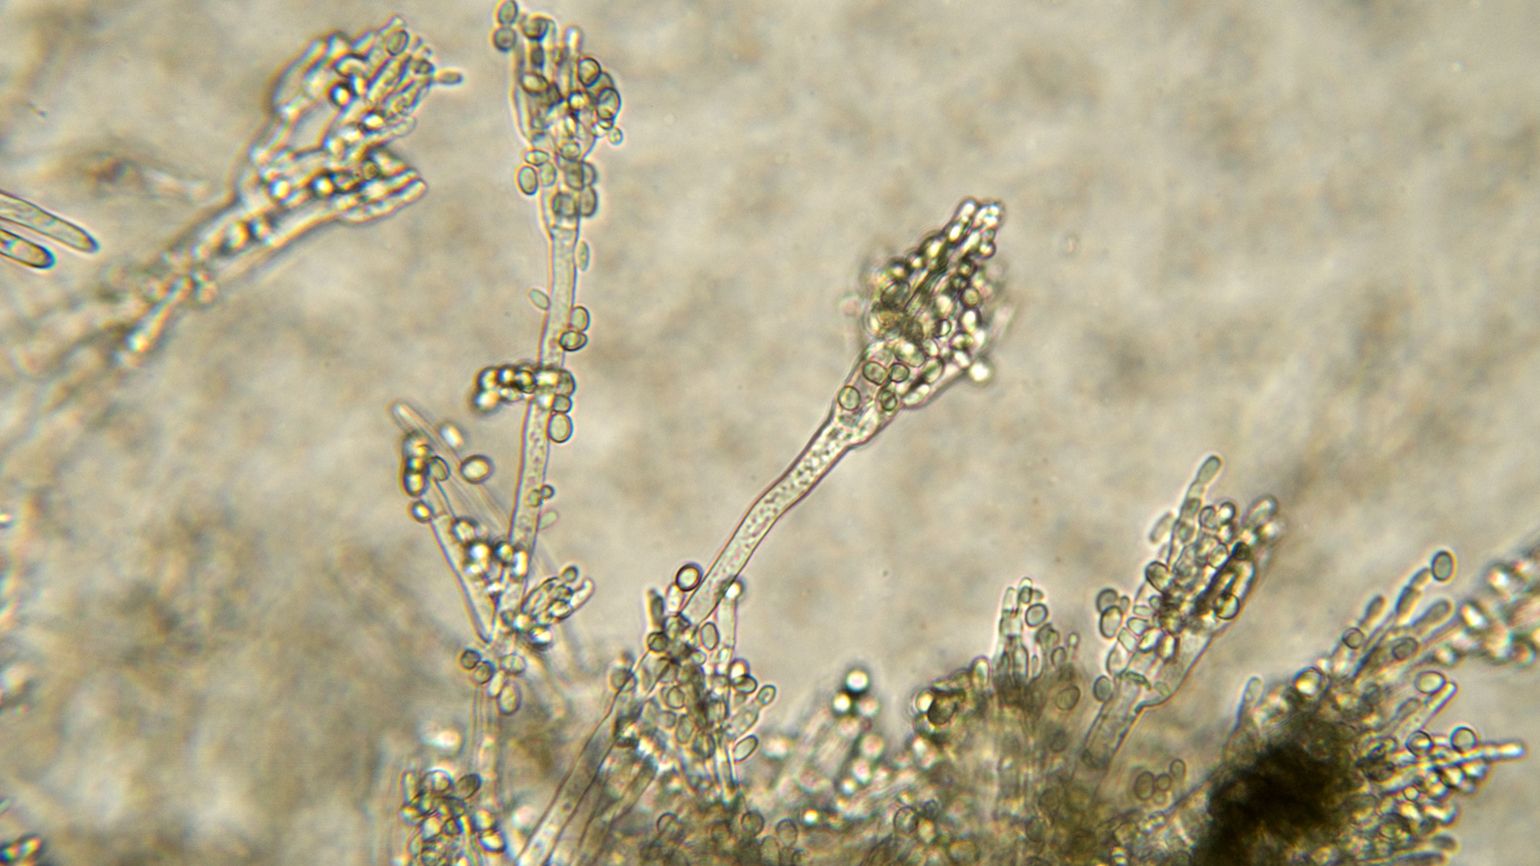 Microscopic close up of the penicillin bacteria.